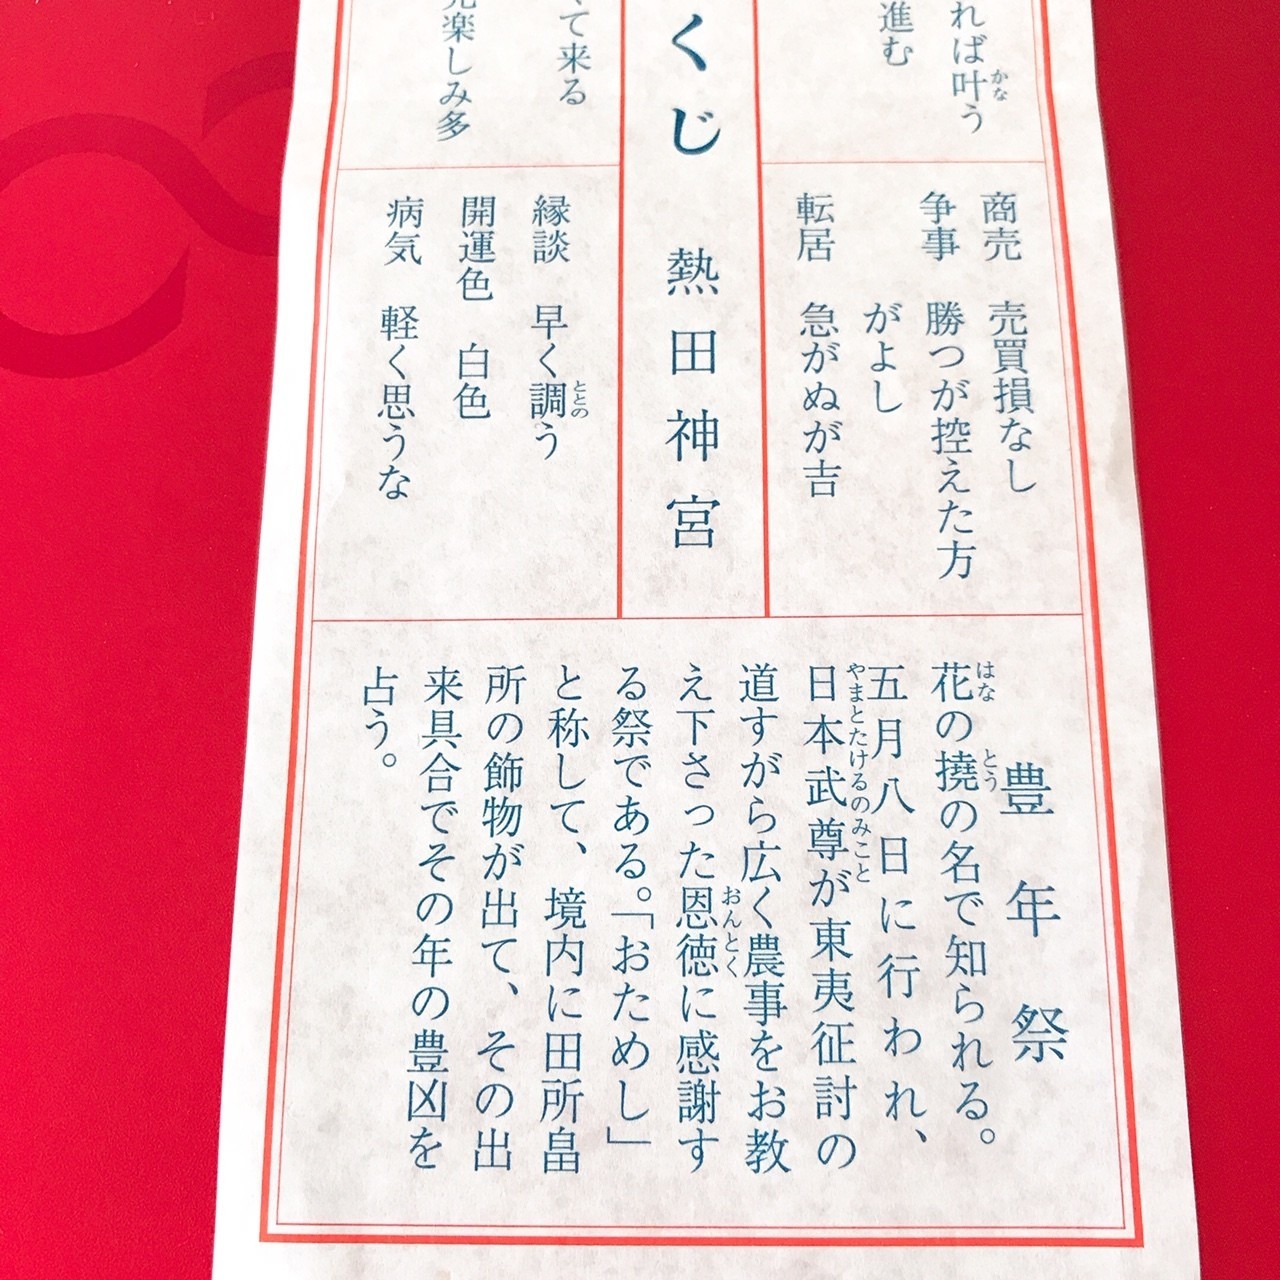 熱田 神宮 おみくじ 順番 最高の画像壁紙日本am